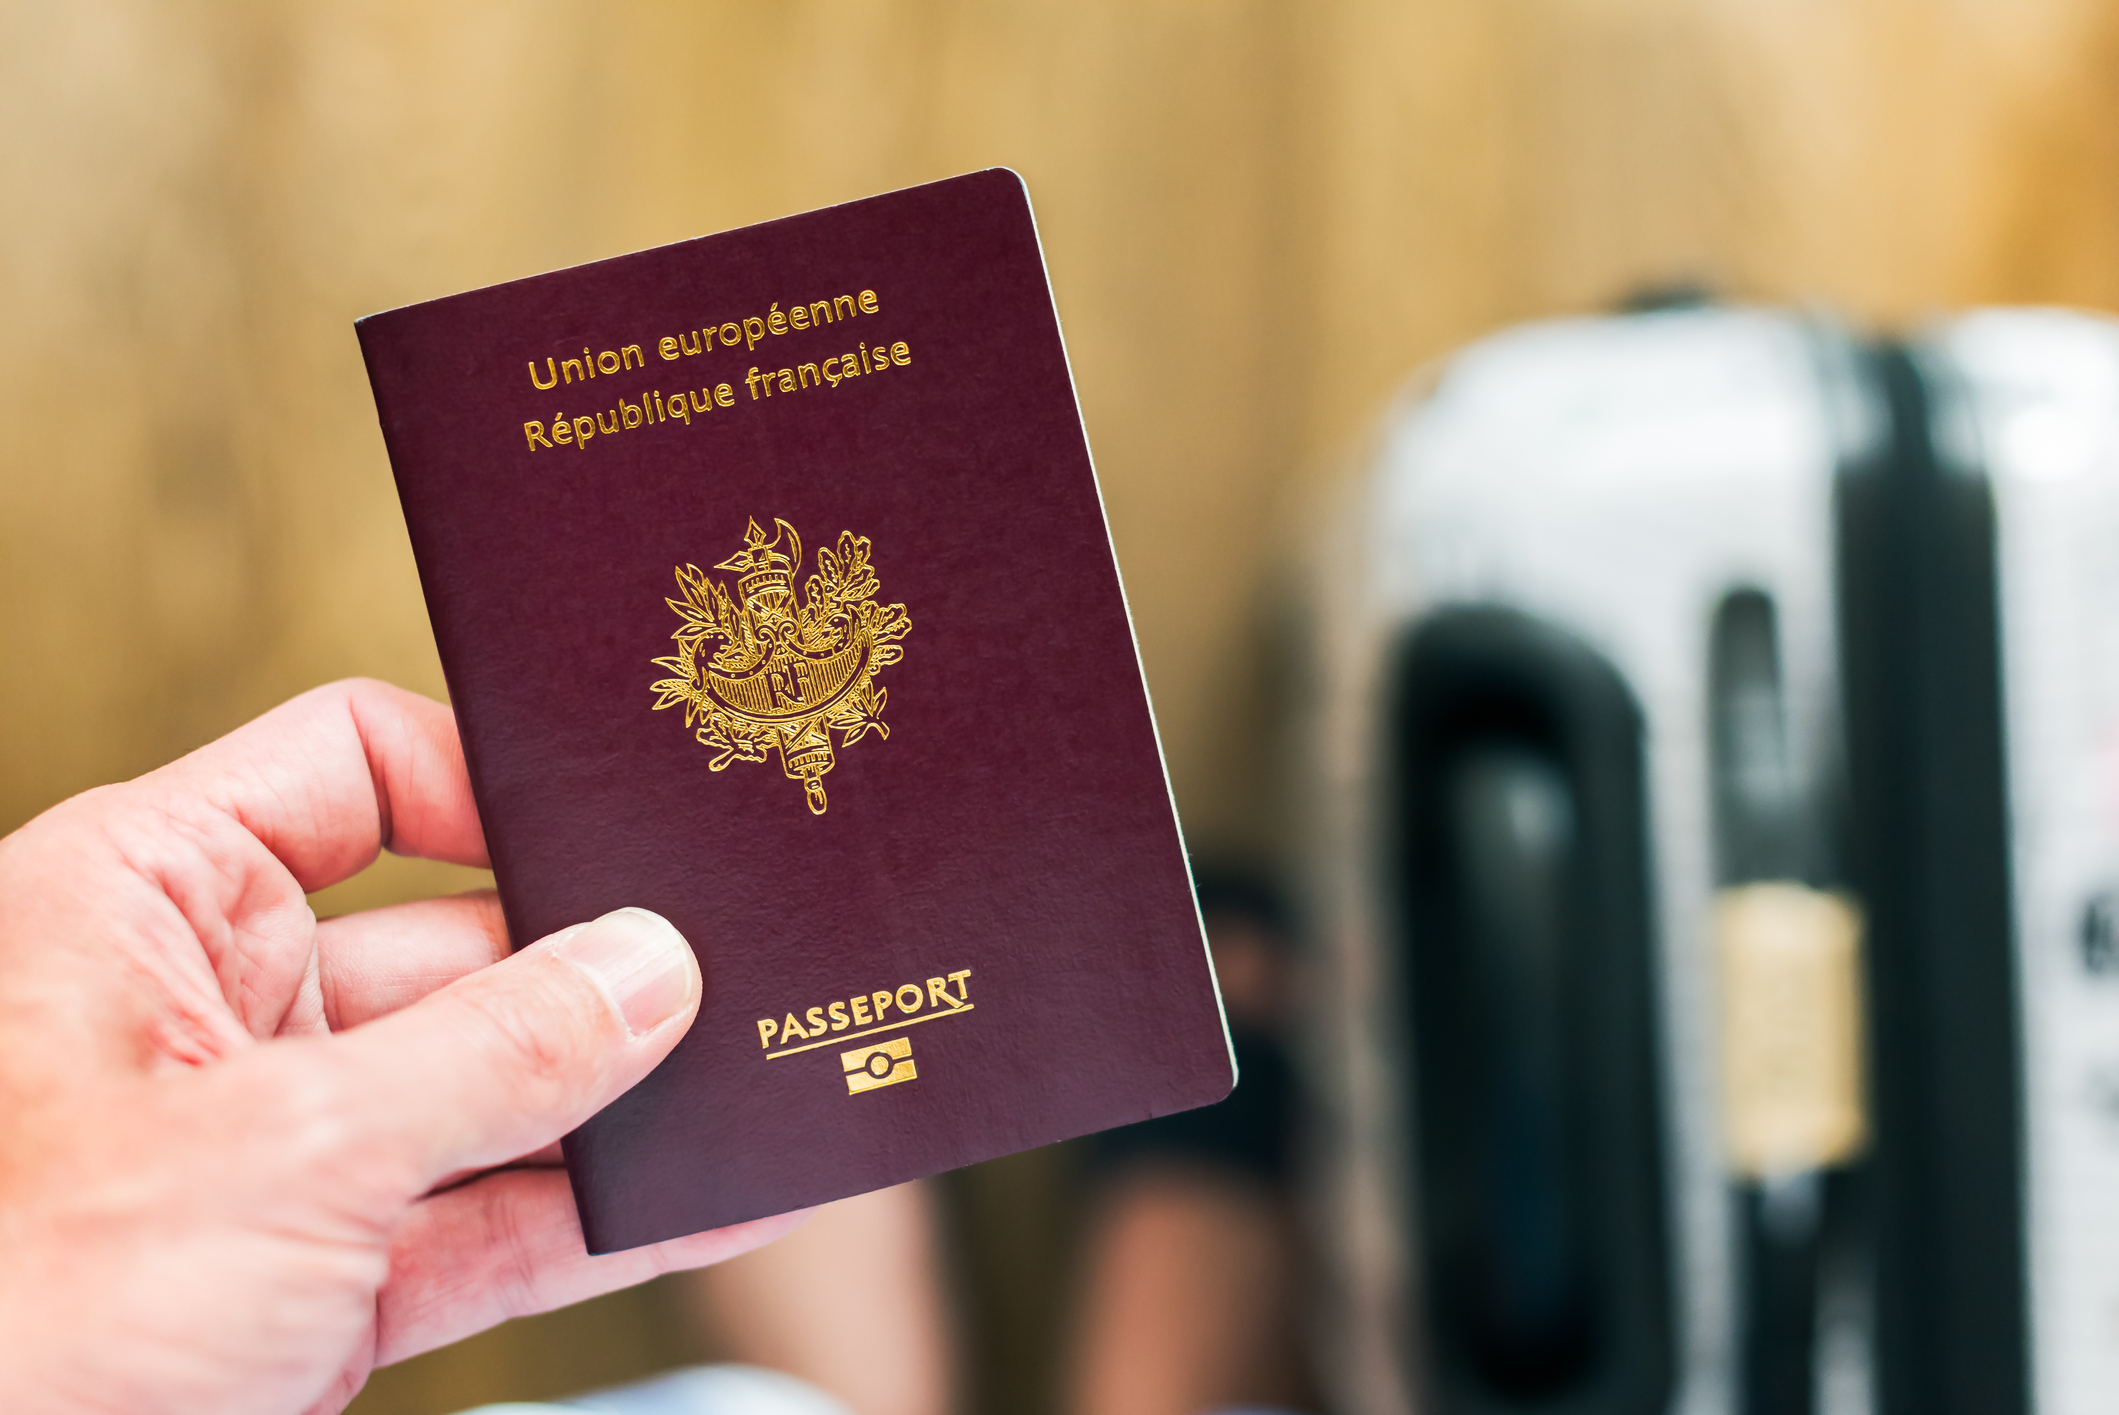 LockBit divulgue 8 000 passeports français